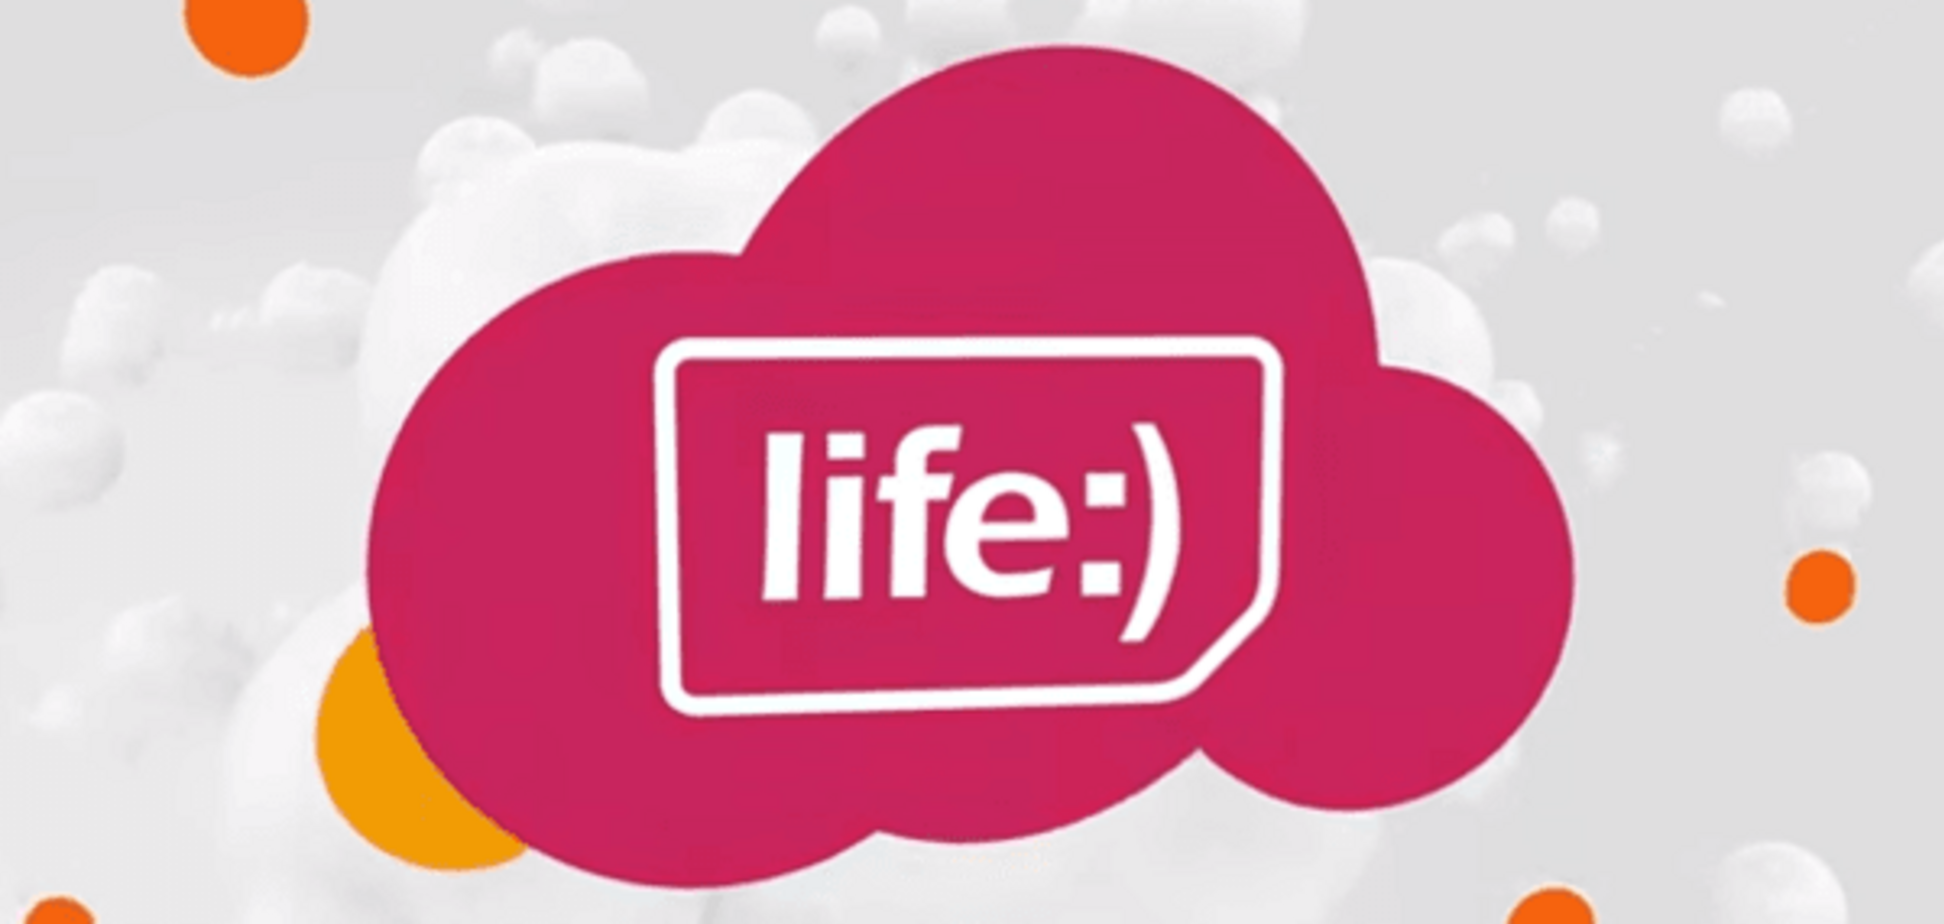 Никакой жизни: мобильный оператор 'Life' сменил название